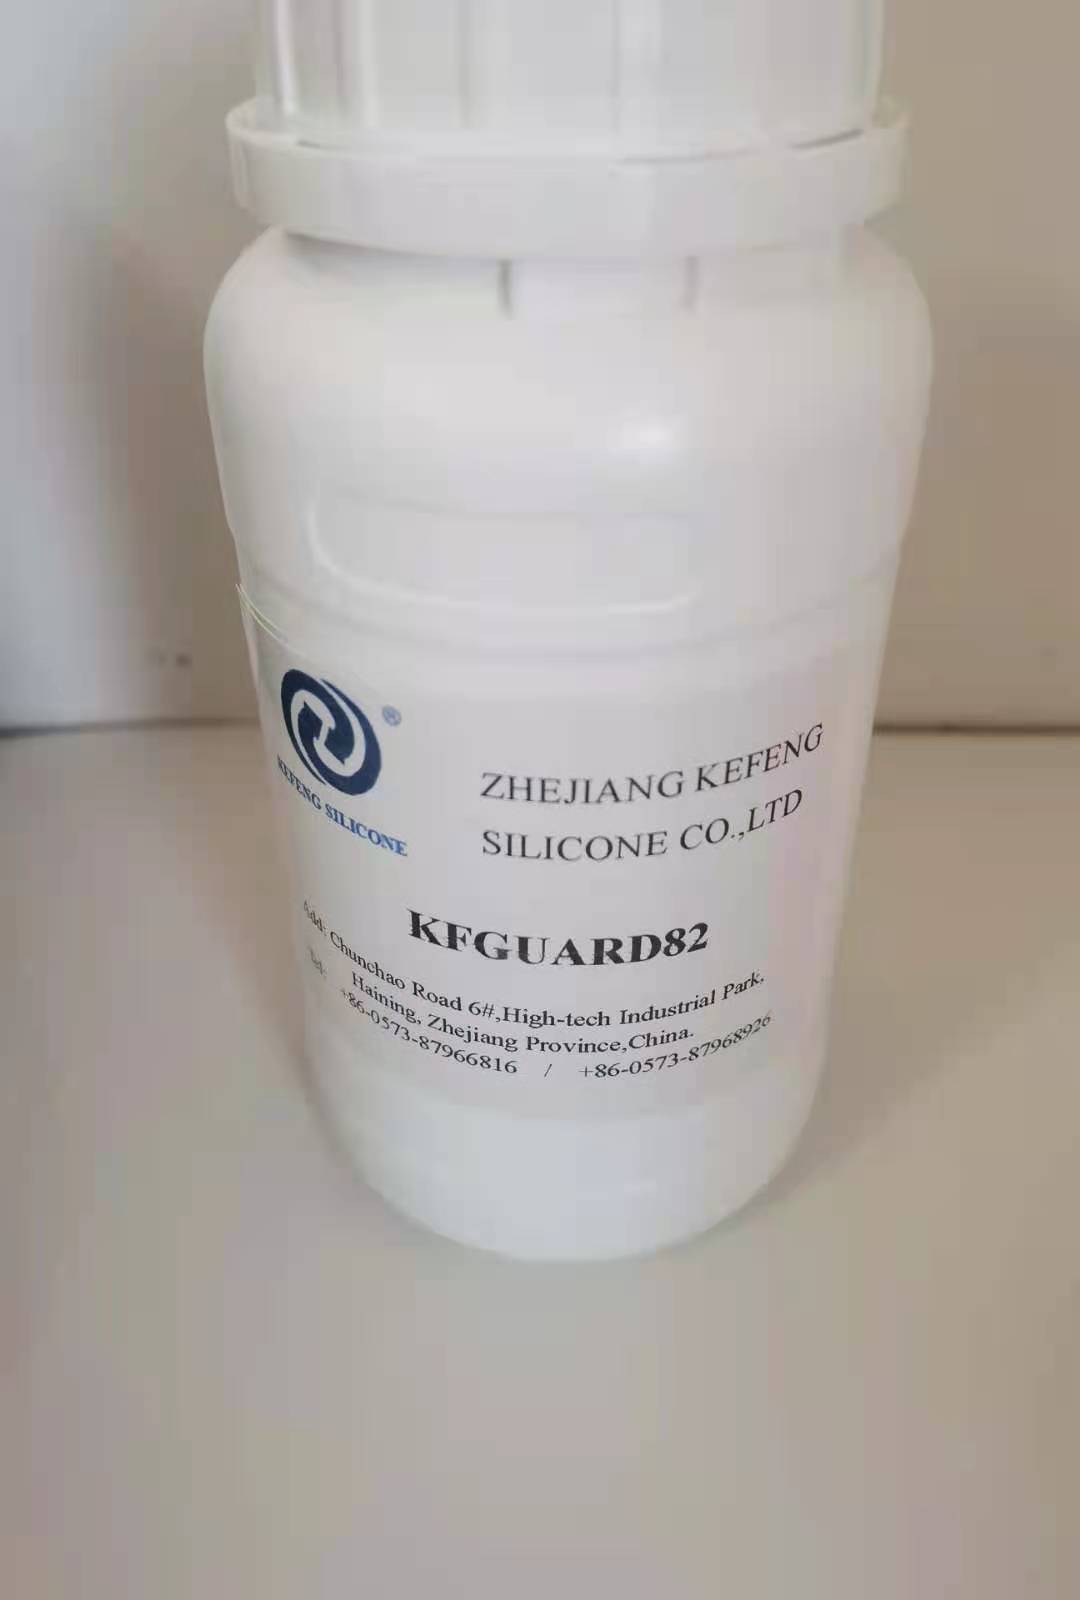 Đại lý thuốc chống thấm nước KfGuard82